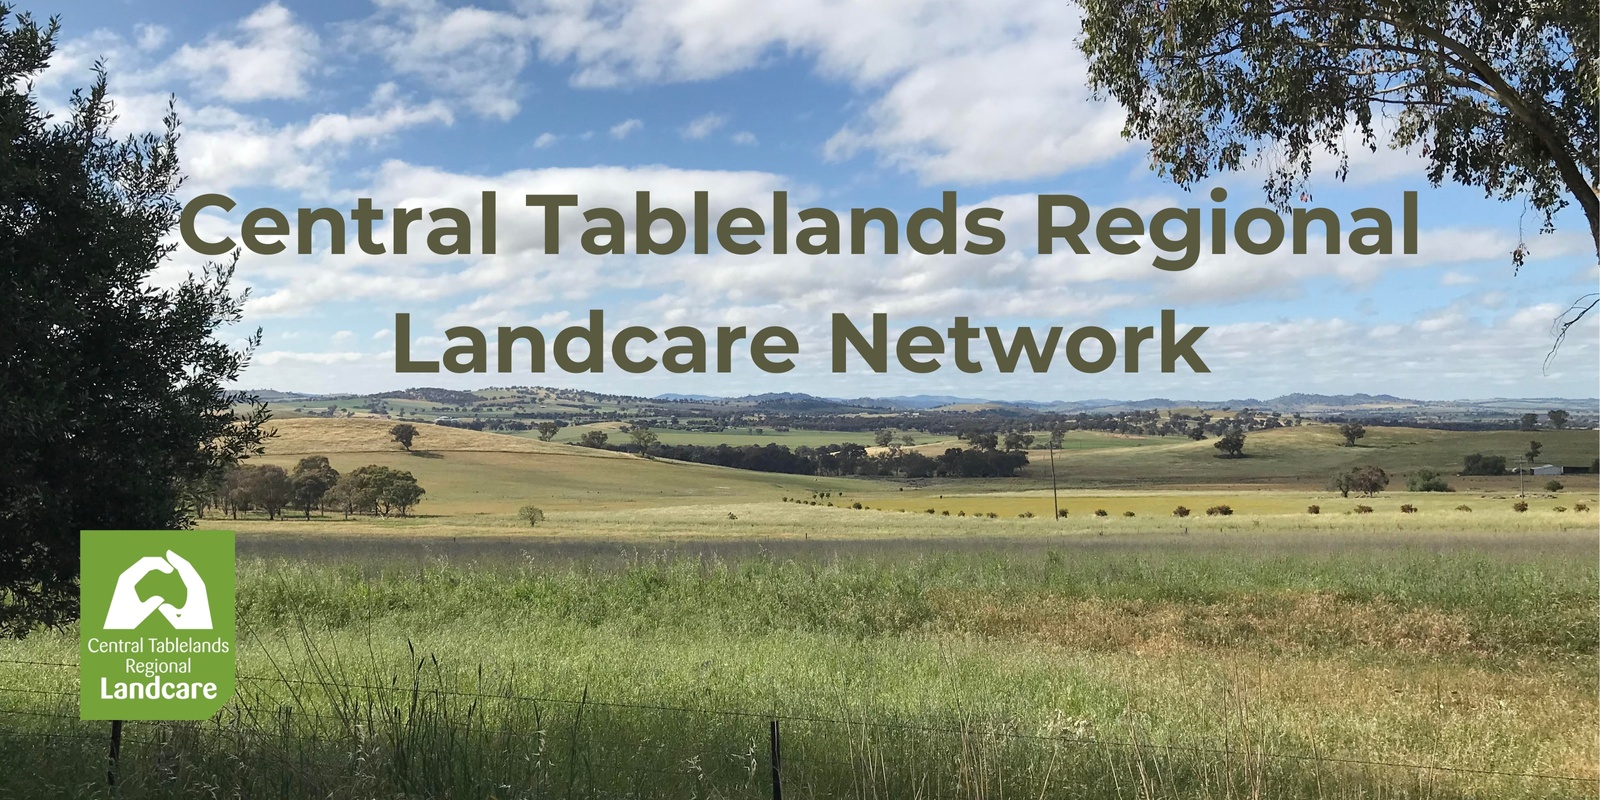 Central Tablelands Regional Landcare Network's banner